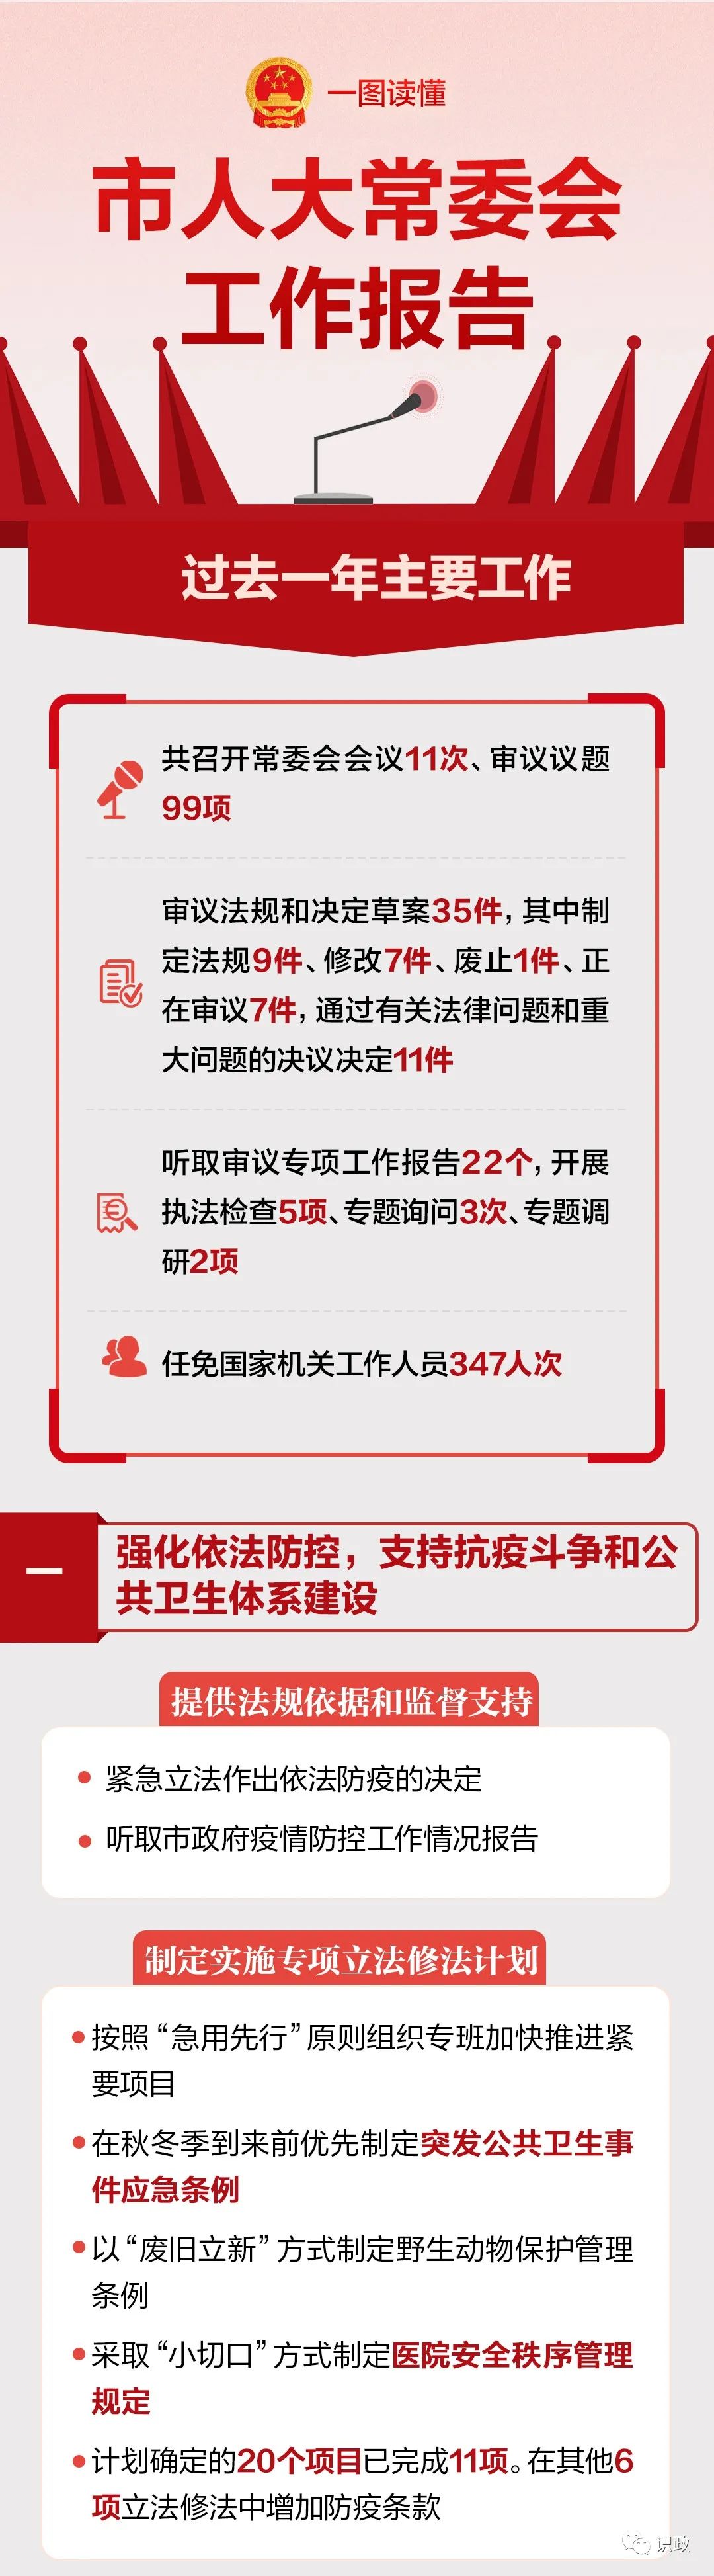 一图读懂北京市人大常委会工作报告